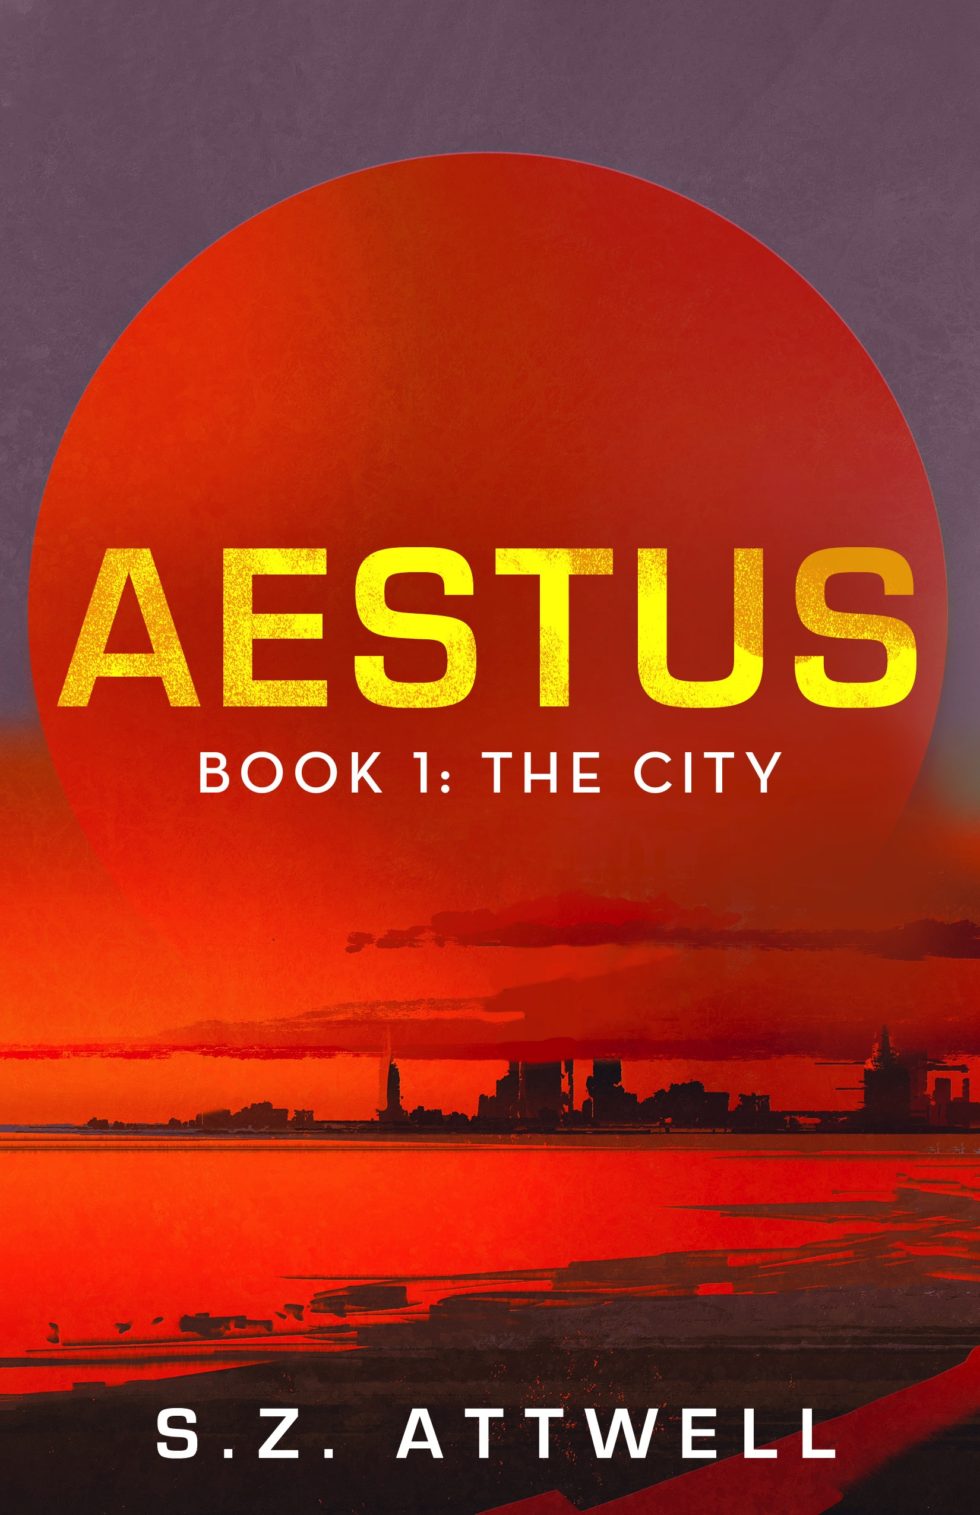 Aestus, Book 1: The City